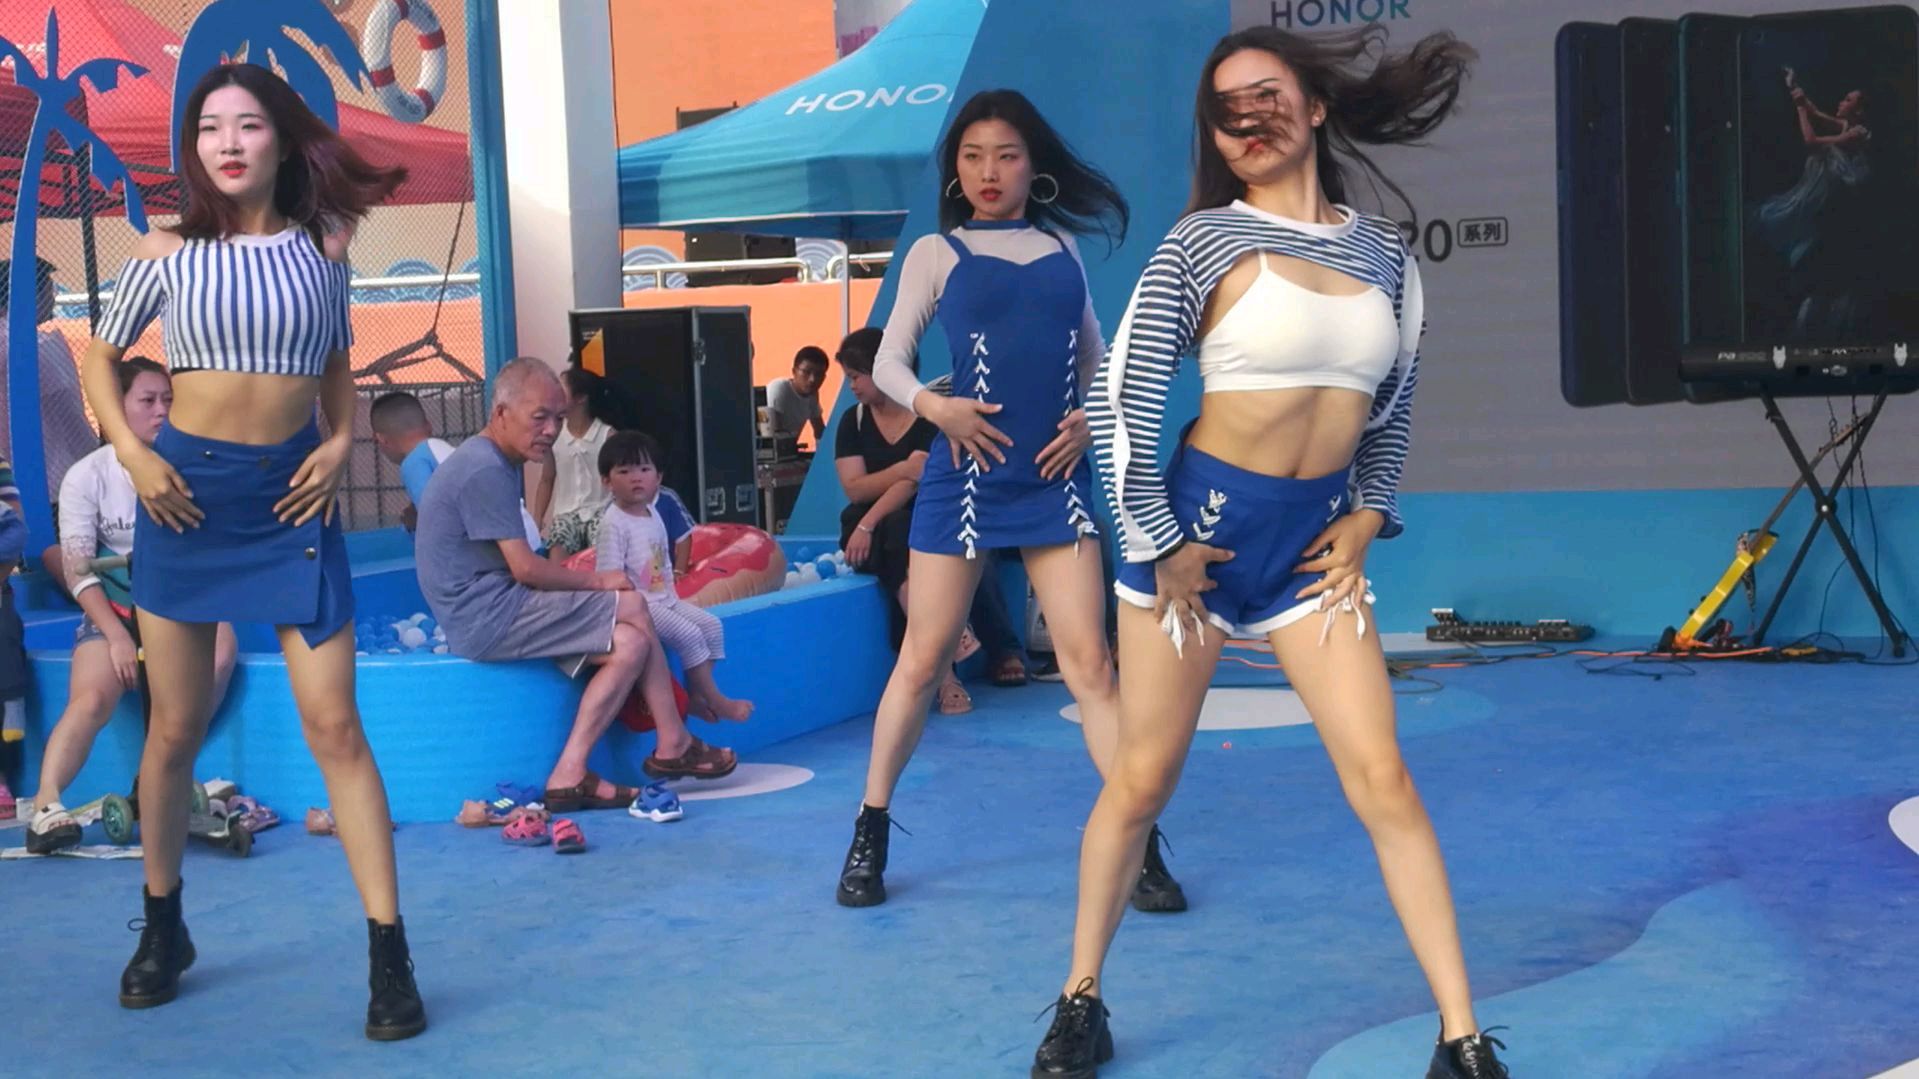 长沙三位美女跳劲舞,吸引了不少围观群众